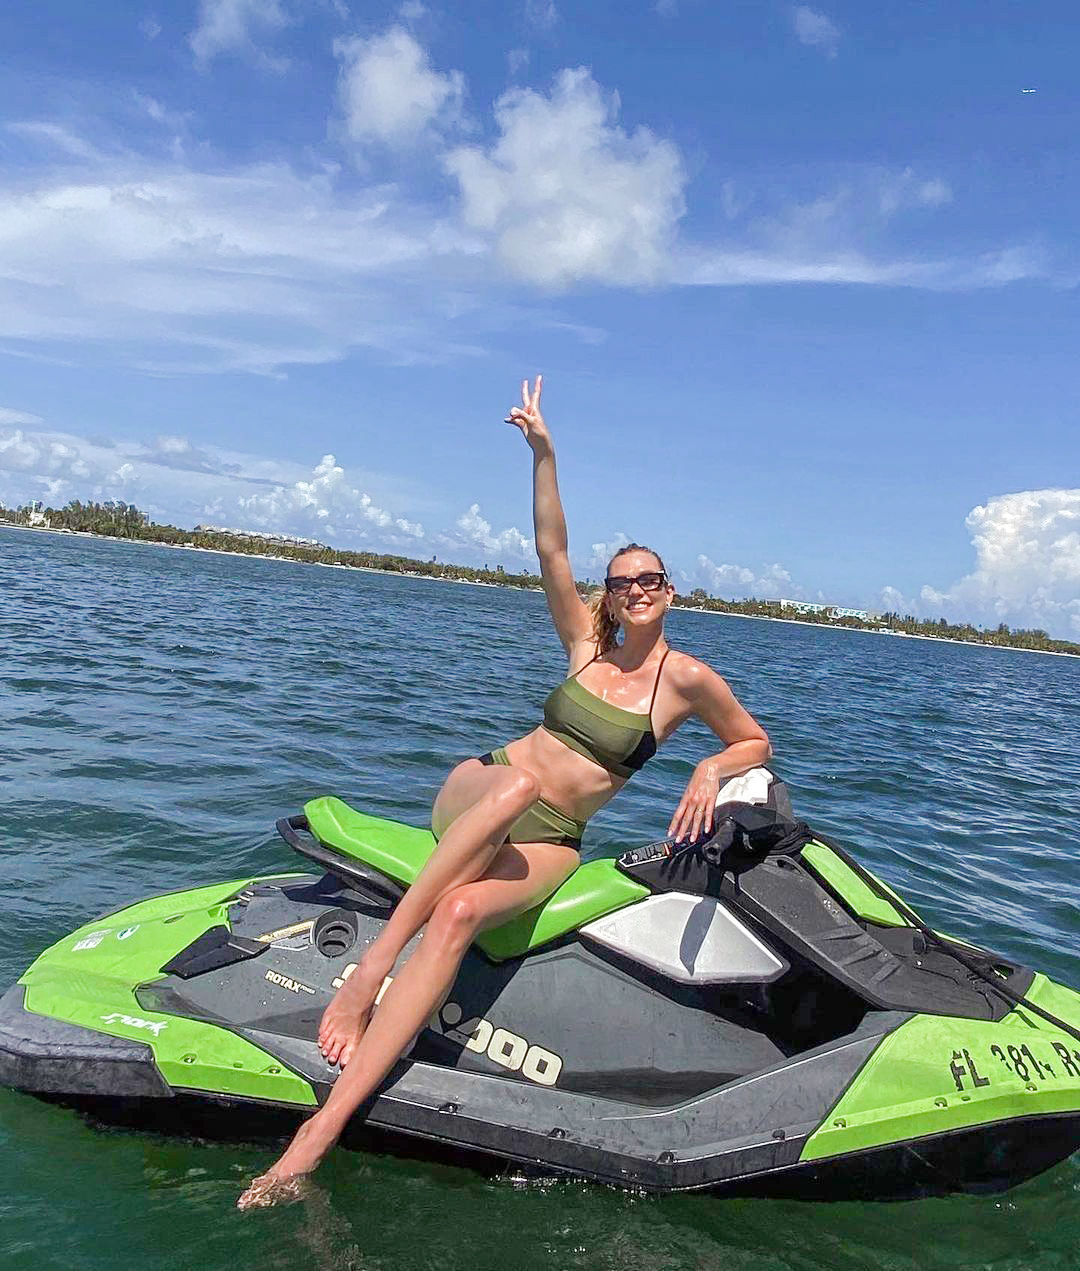 Photos n°1 : Karlie Kloss Loves Watersports!